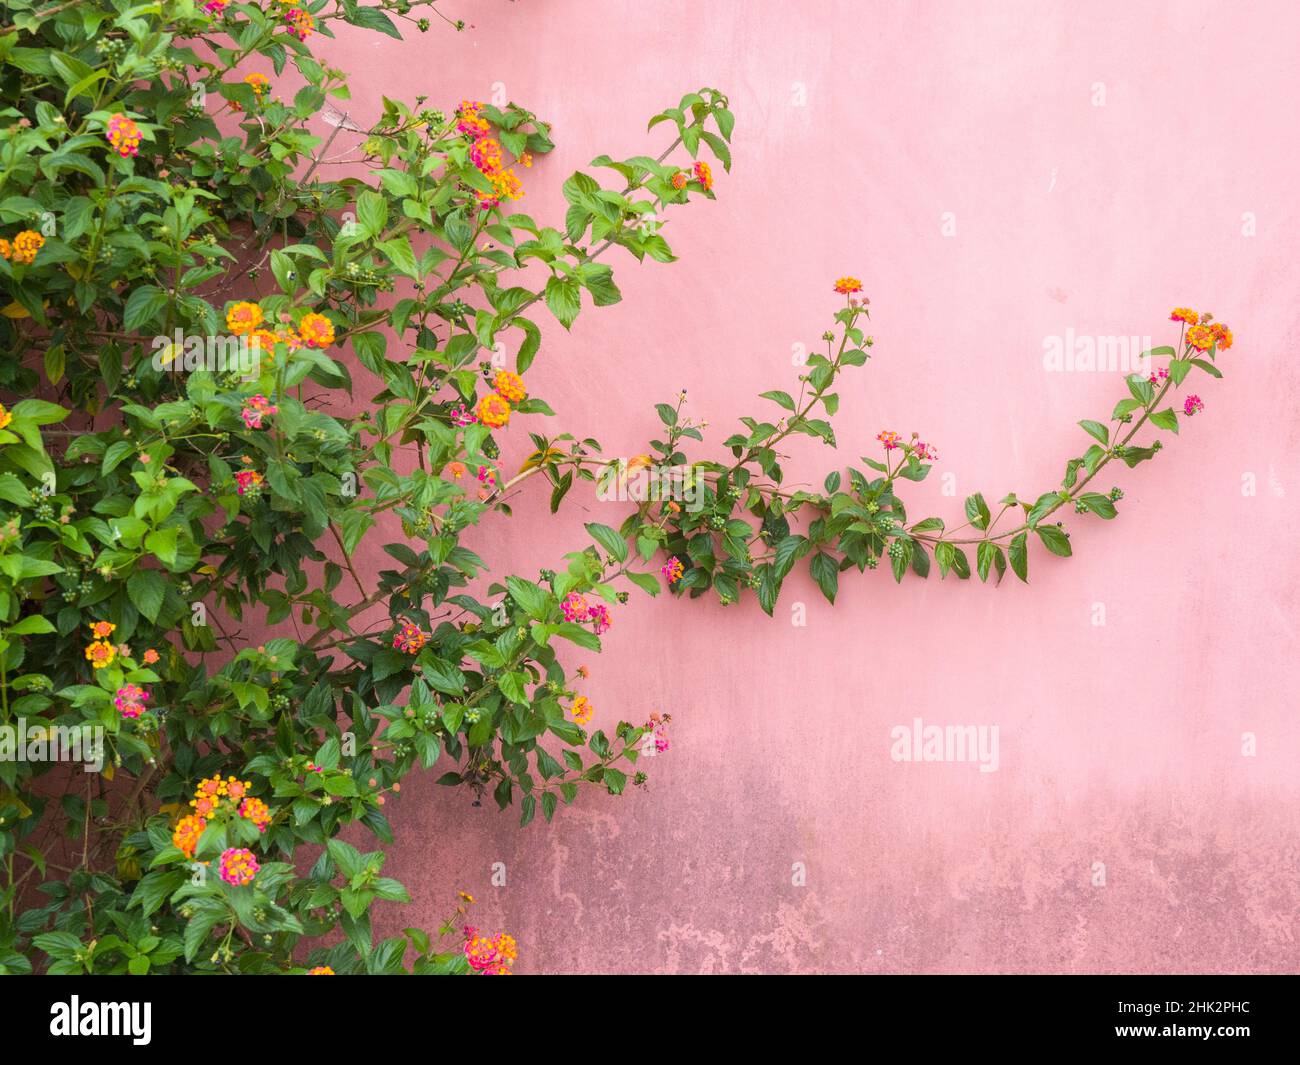 Portugal, Obidos. Die farbenfrohe lantana-Rebe wächst an einer rosa Wand. Stockfoto